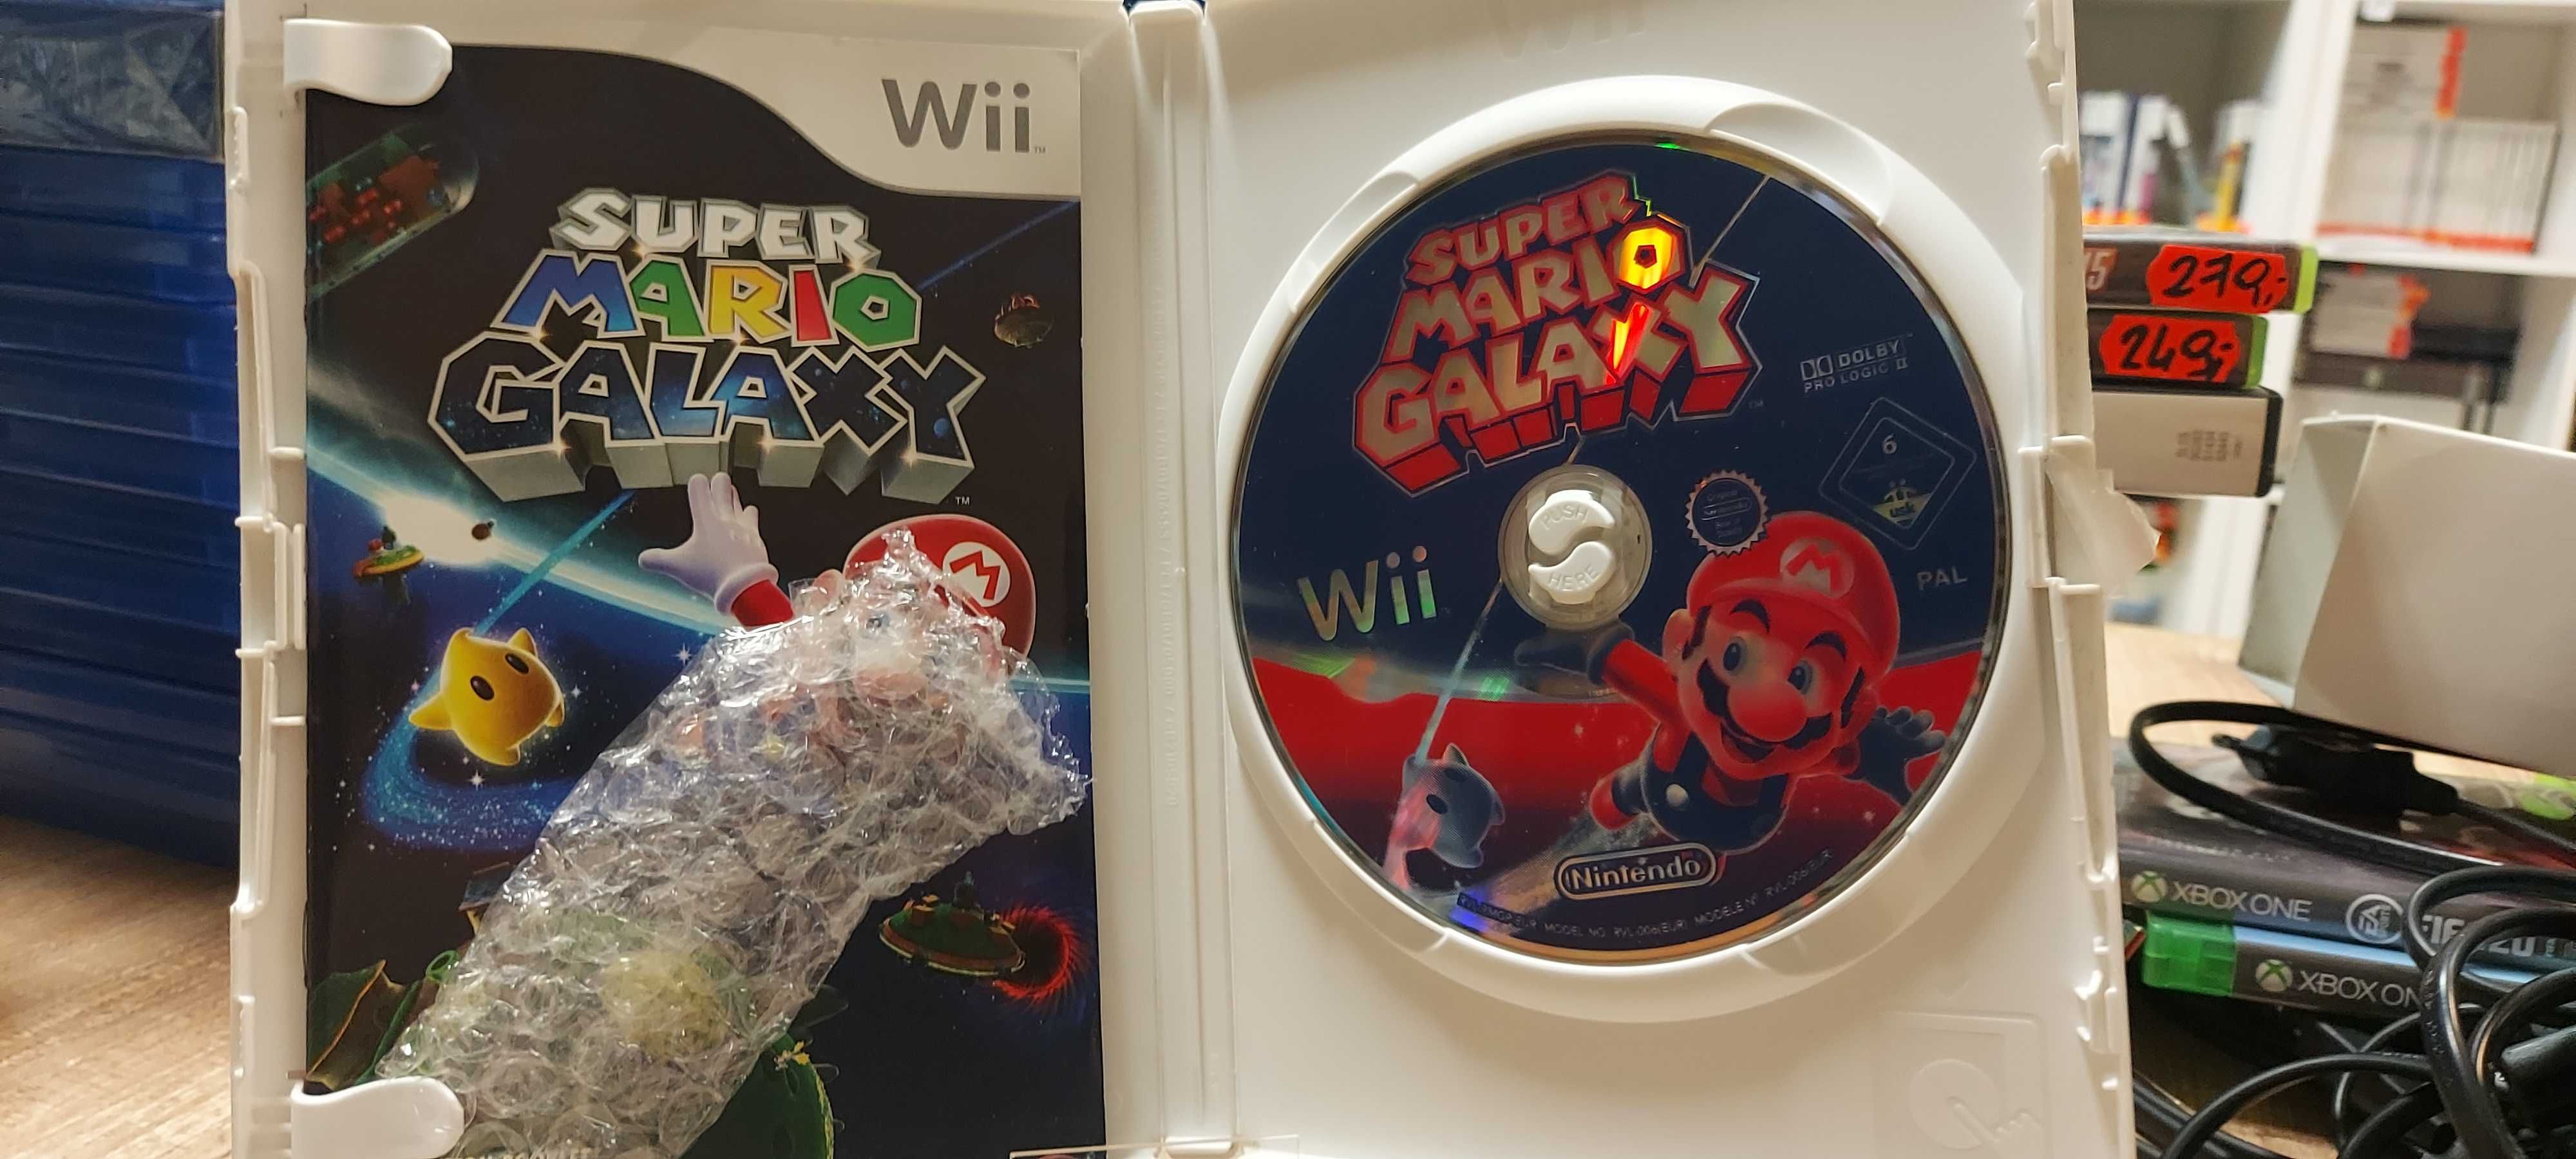 Super Mario Galaxy Wii, Sklep Wysyłka Wymiana